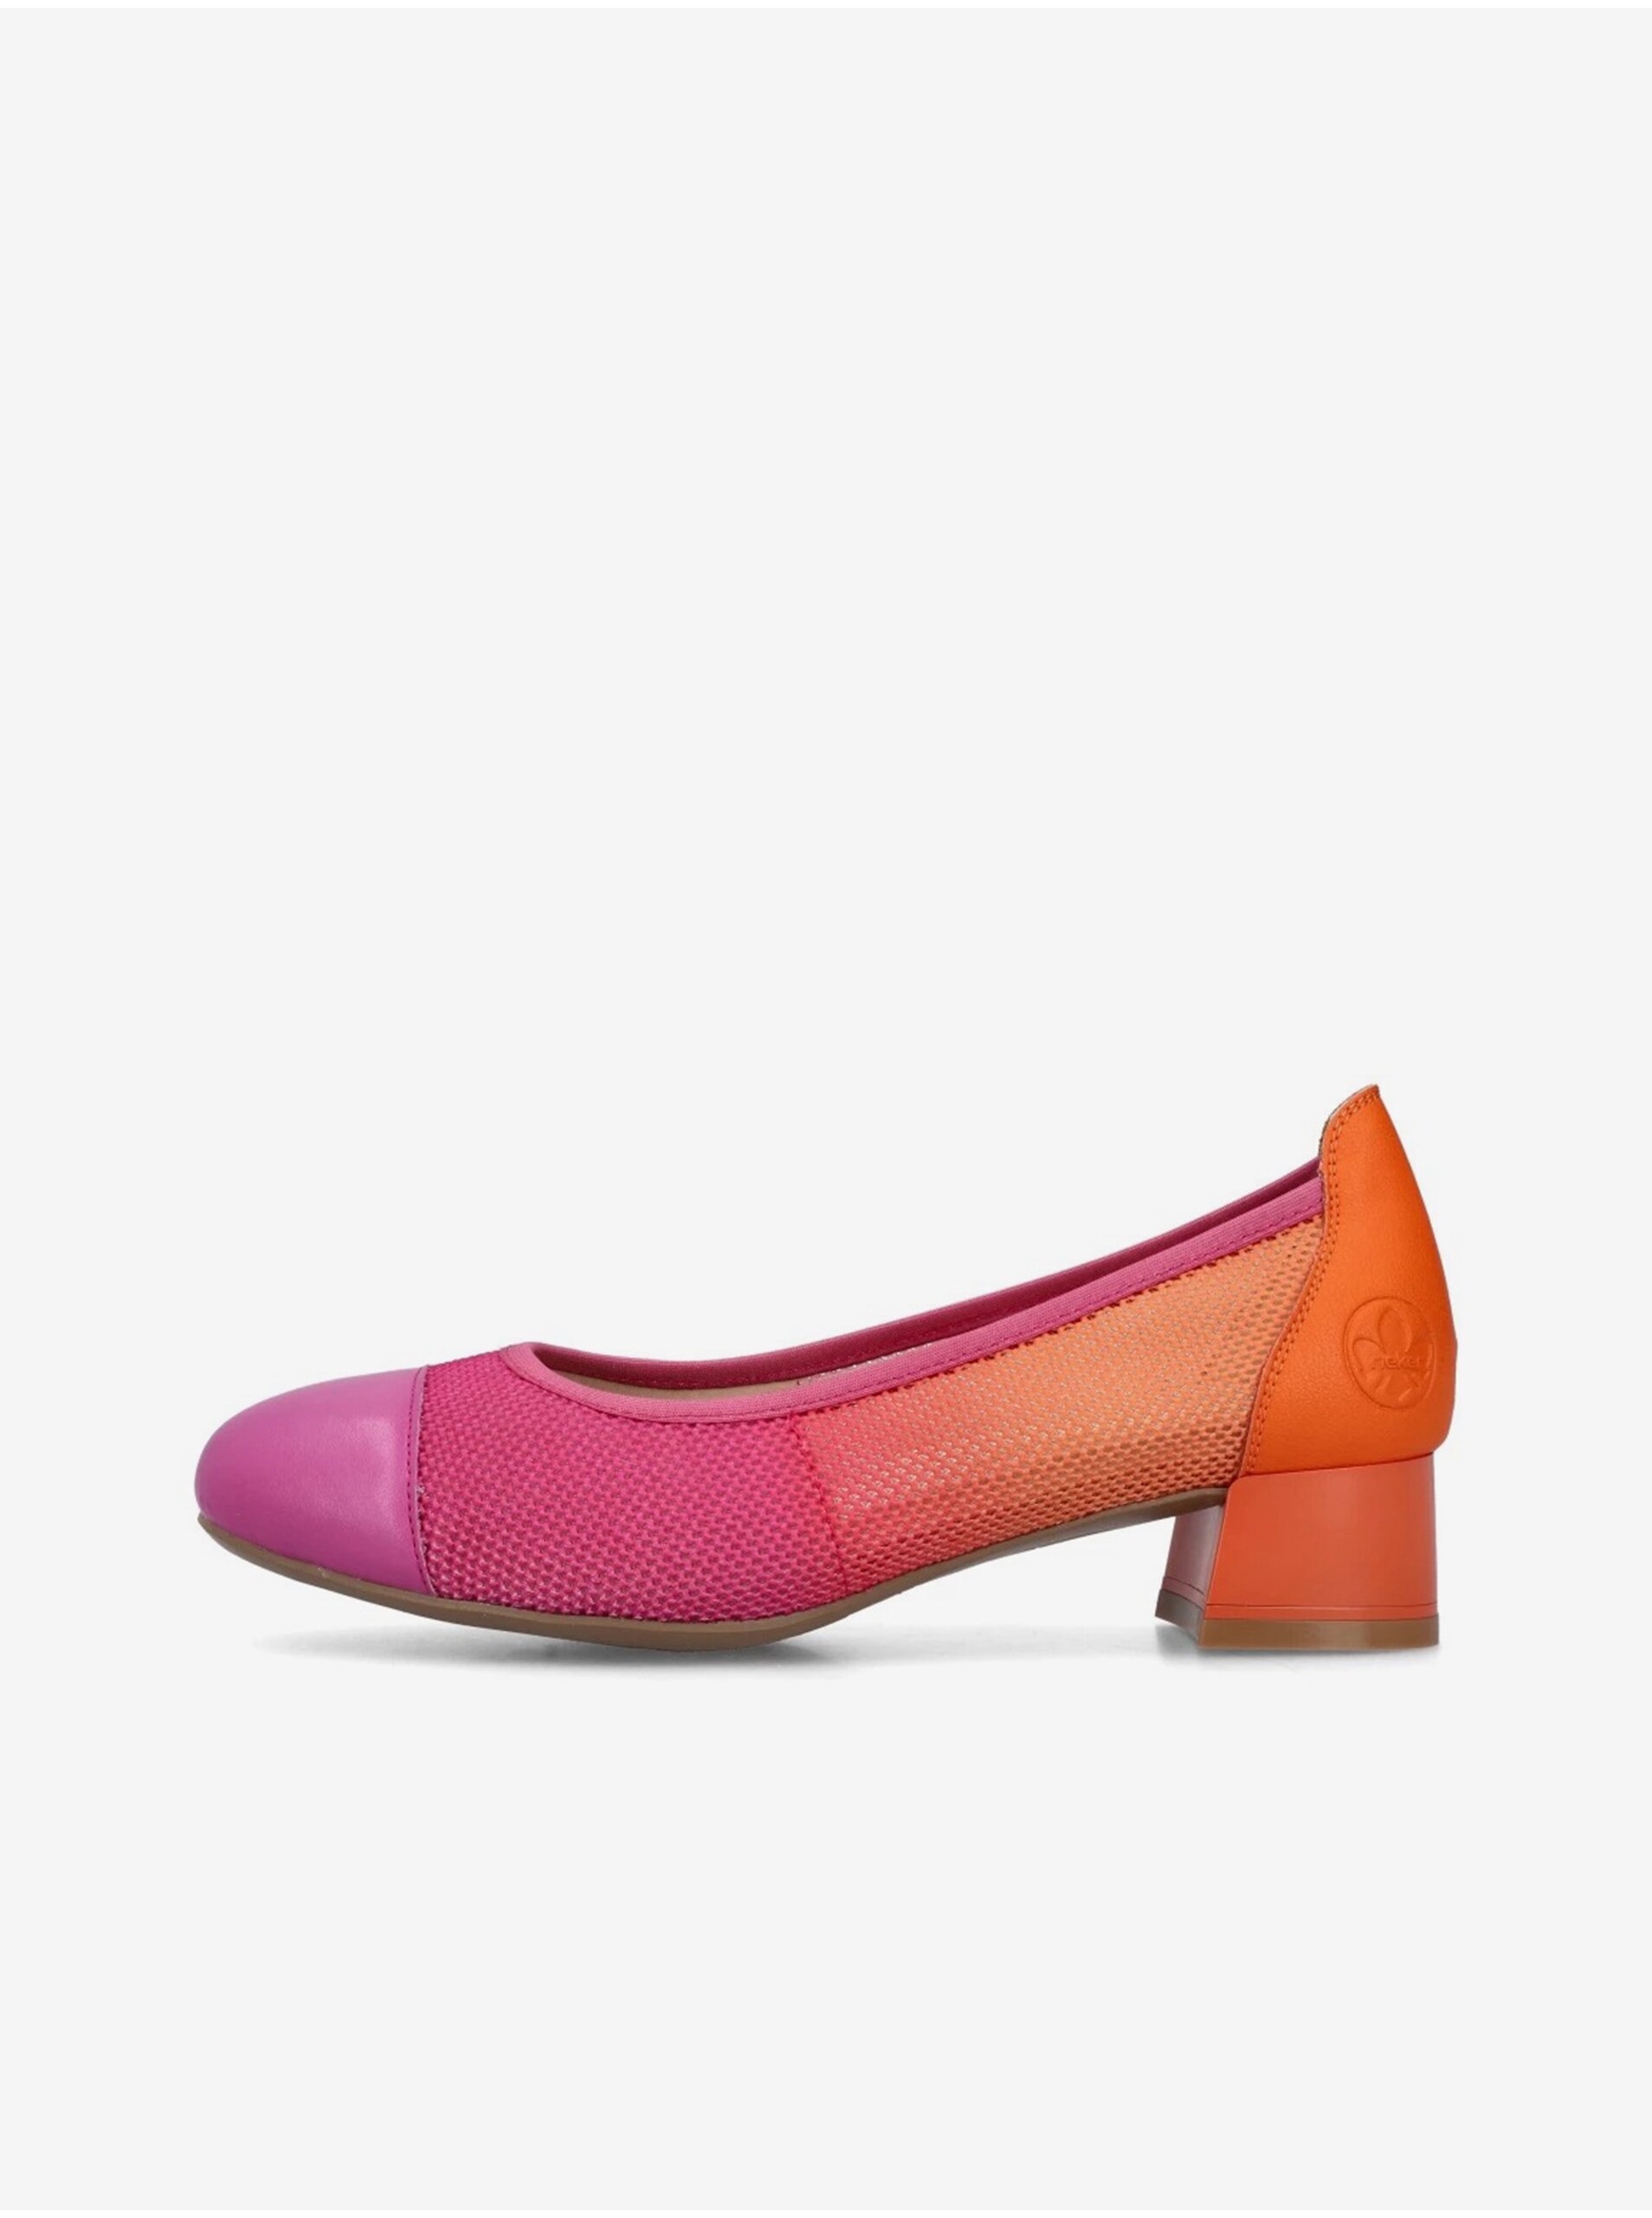 E-shop Oranžovo-růžové dámské lodičky s koženými detaily Rieker